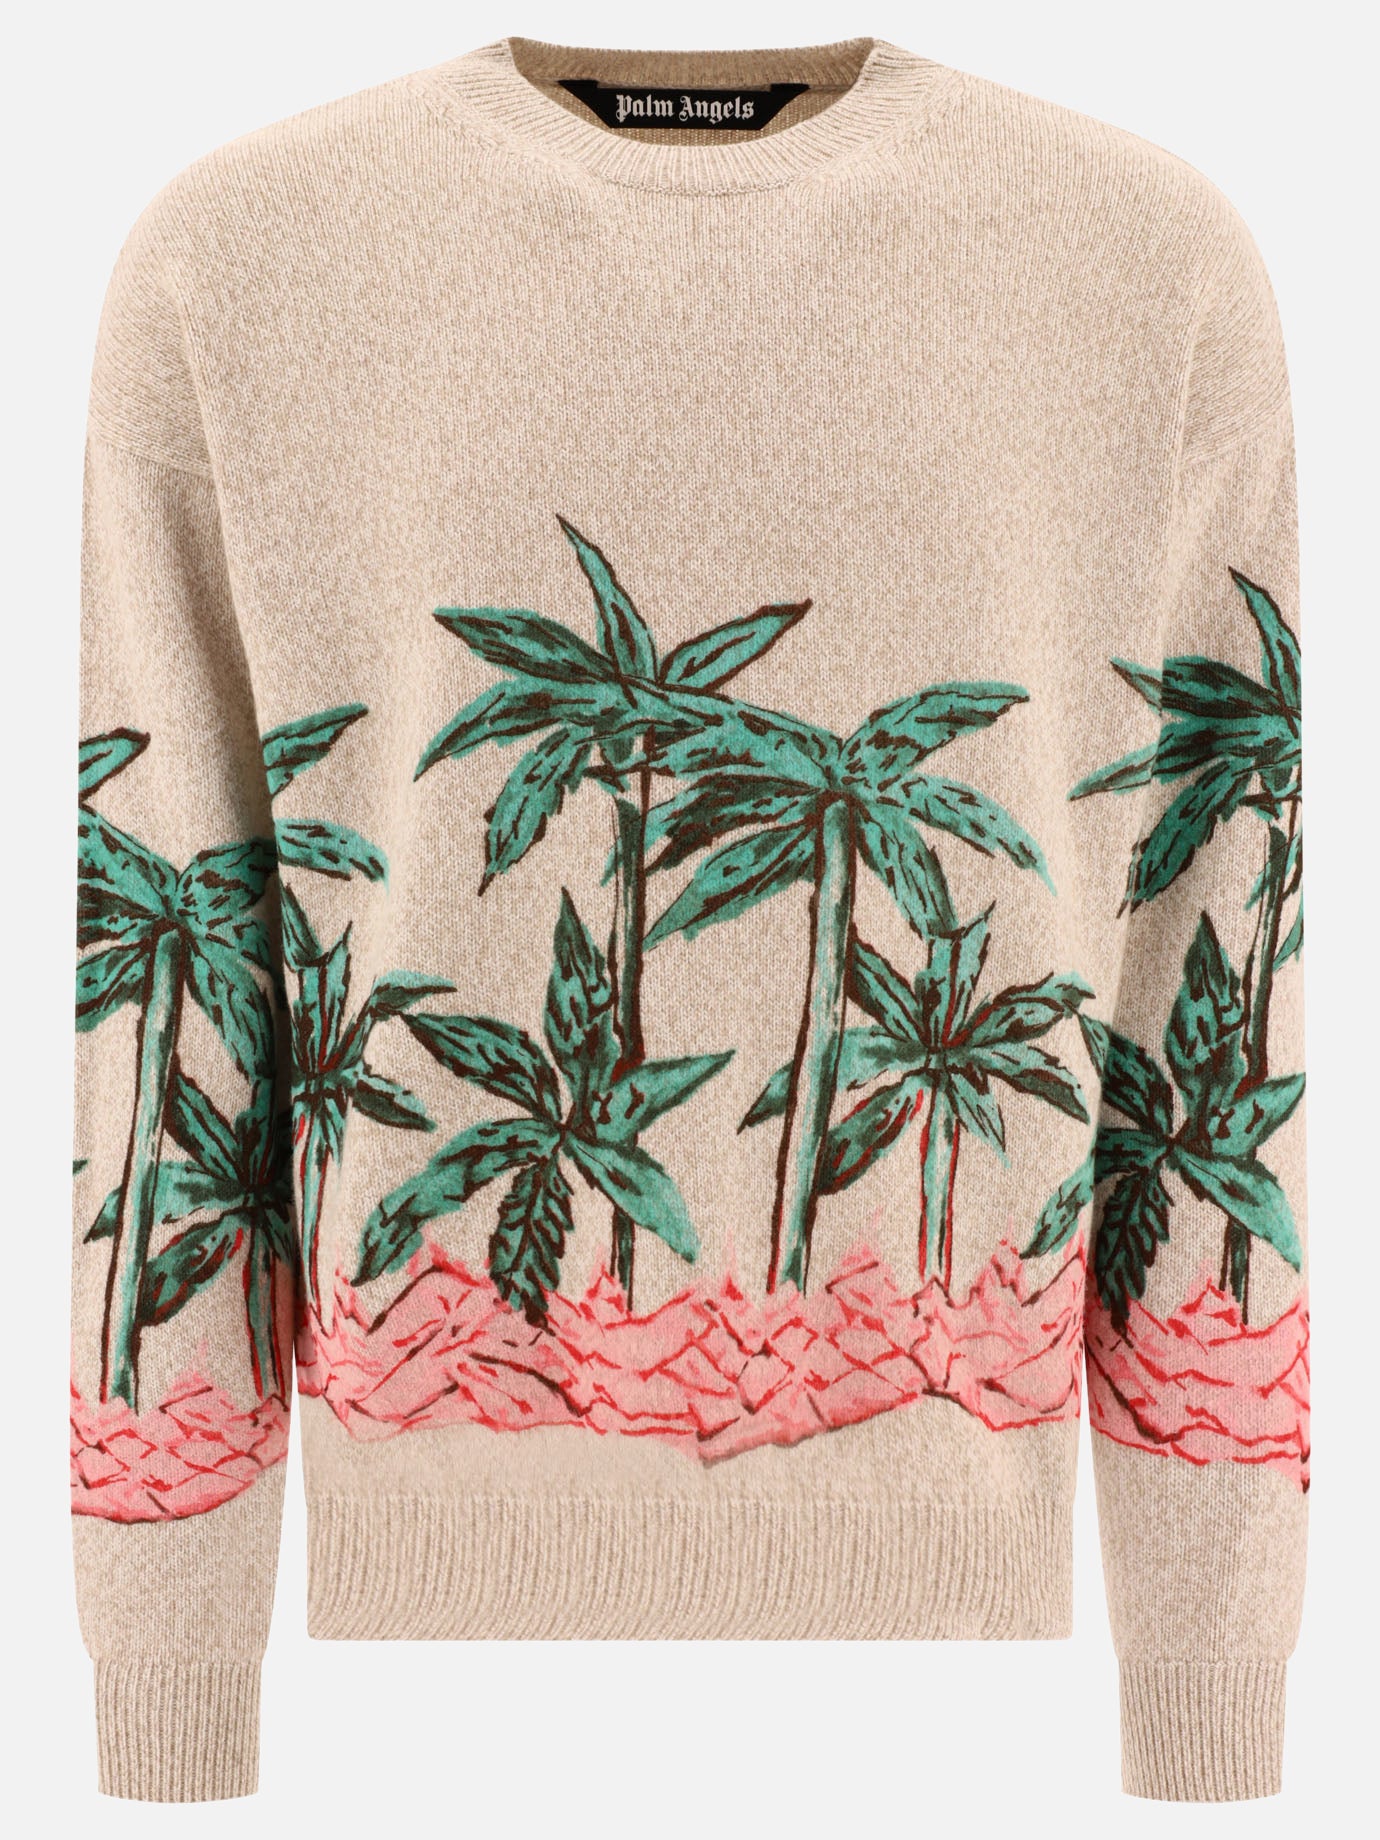 "Palms Row Printed" sweater